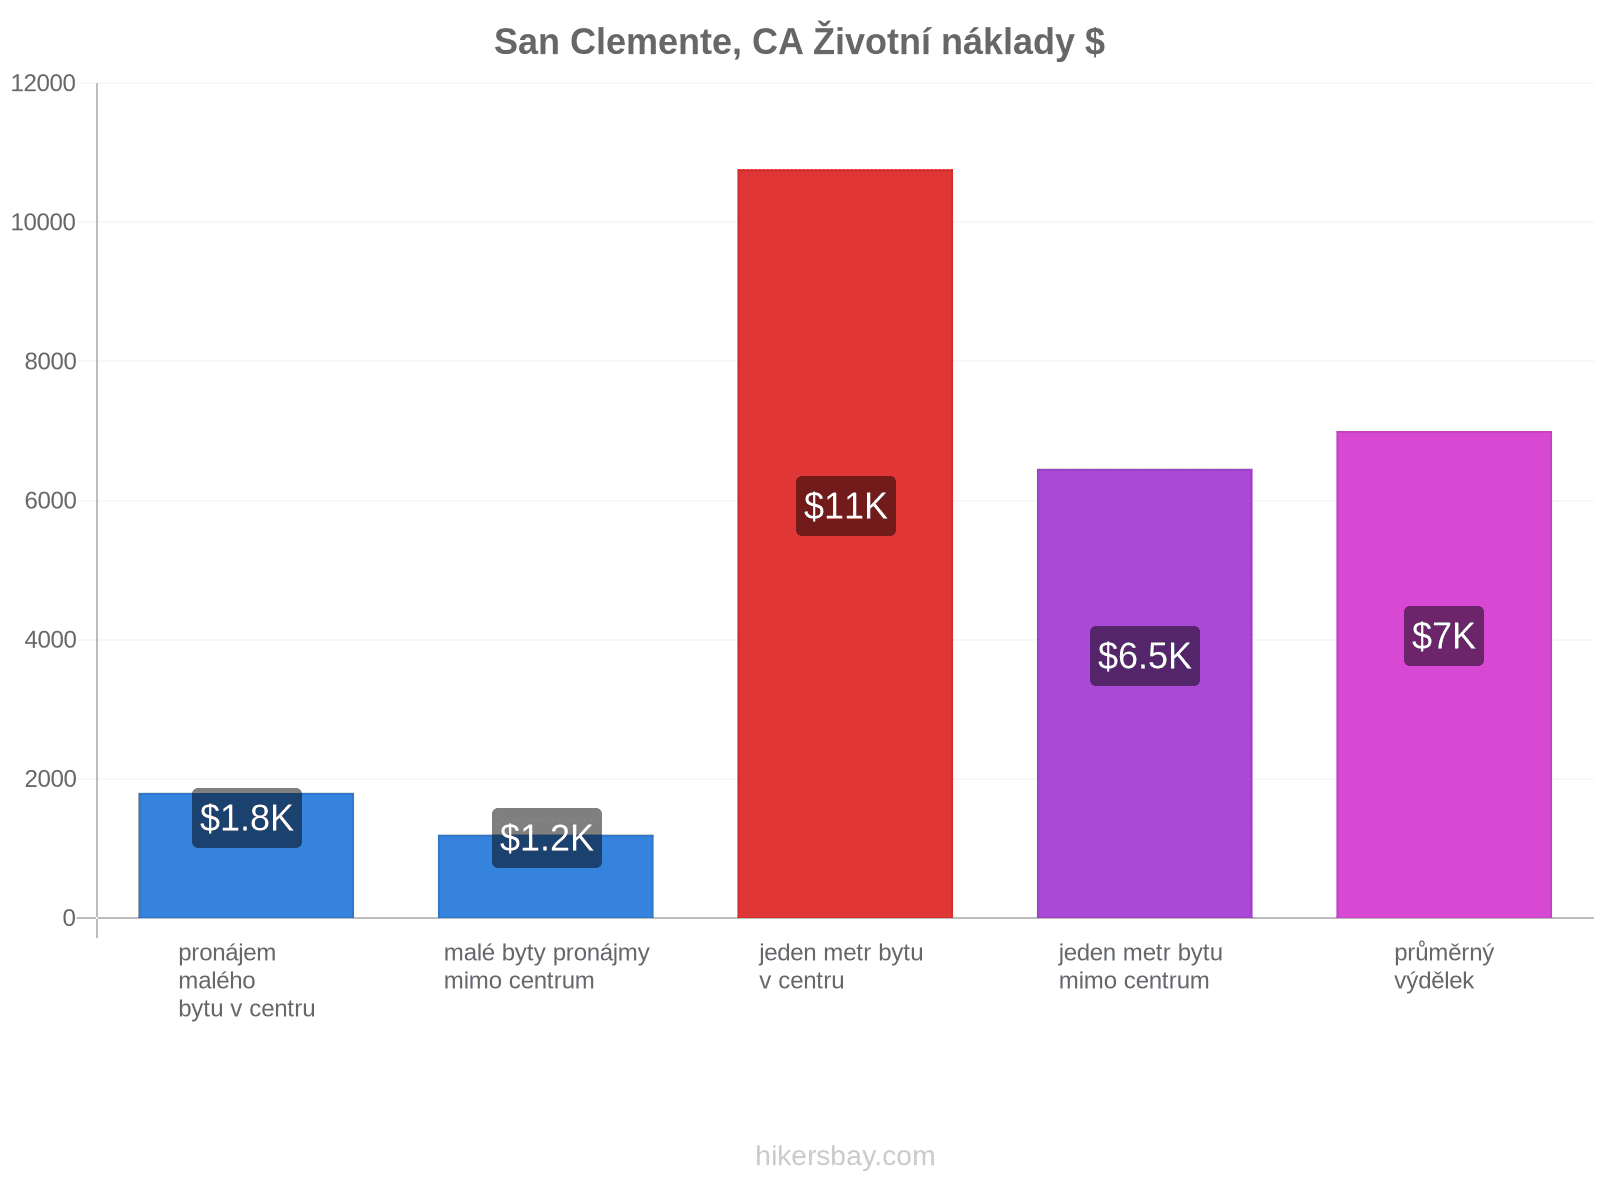 San Clemente, CA životní náklady hikersbay.com